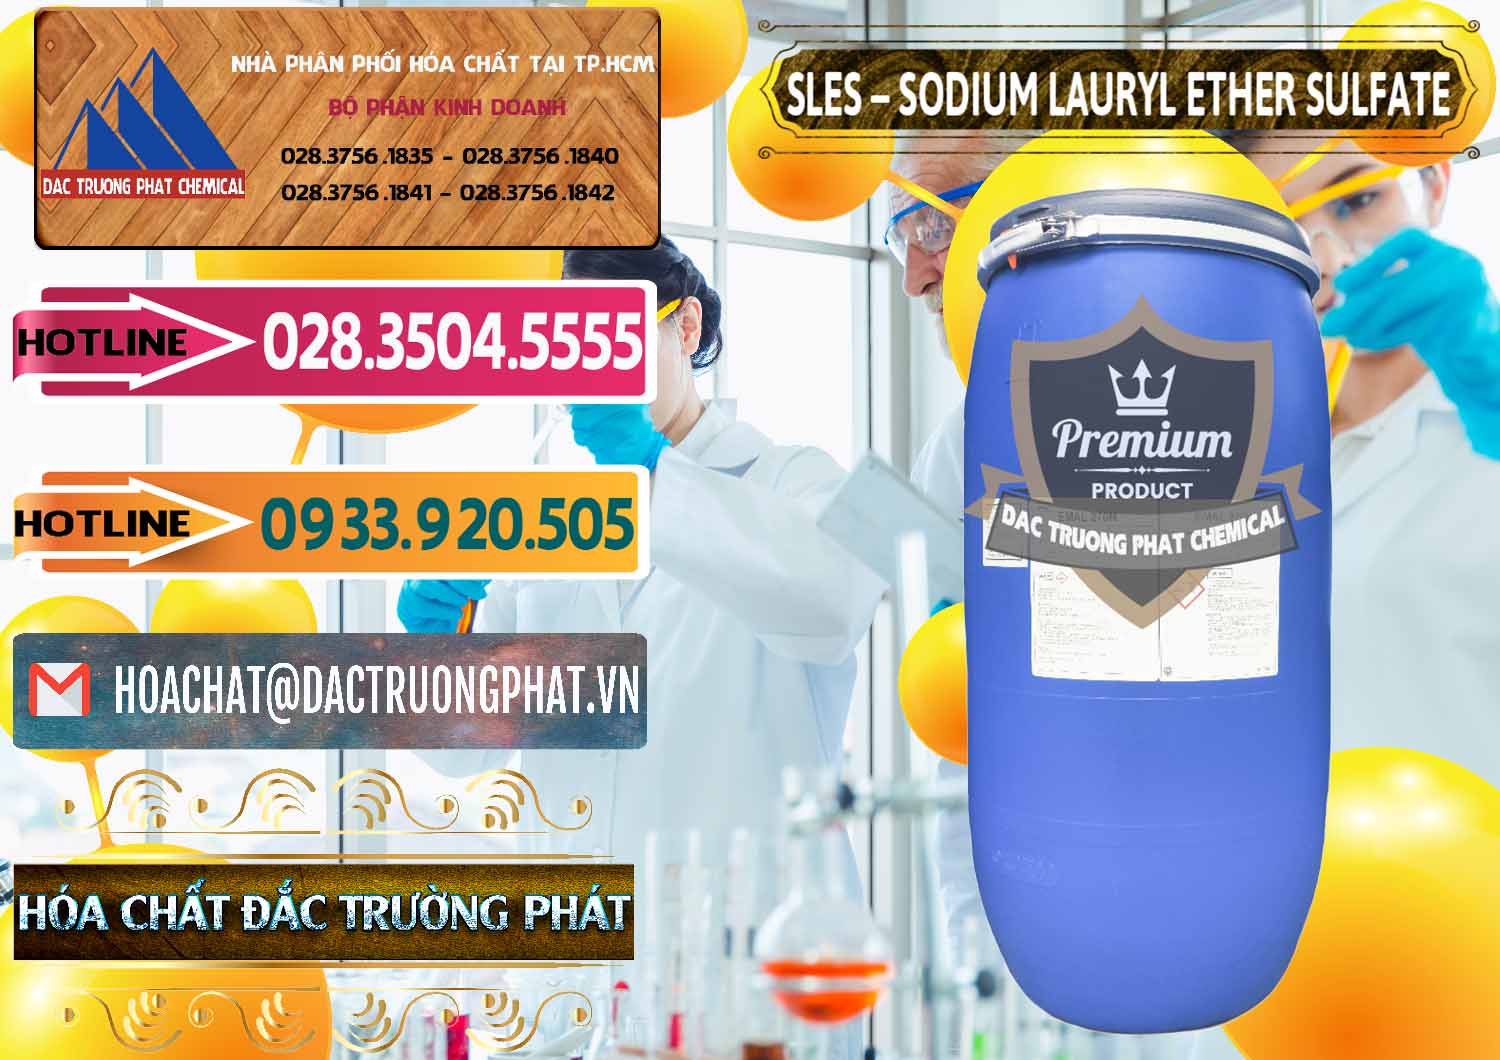 Công ty chuyên bán và phân phối Chất Tạo Bọt Sles - Sodium Lauryl Ether Sulphate Kao Indonesia - 0046 - Cty cung cấp và phân phối hóa chất tại TP.HCM - dactruongphat.vn